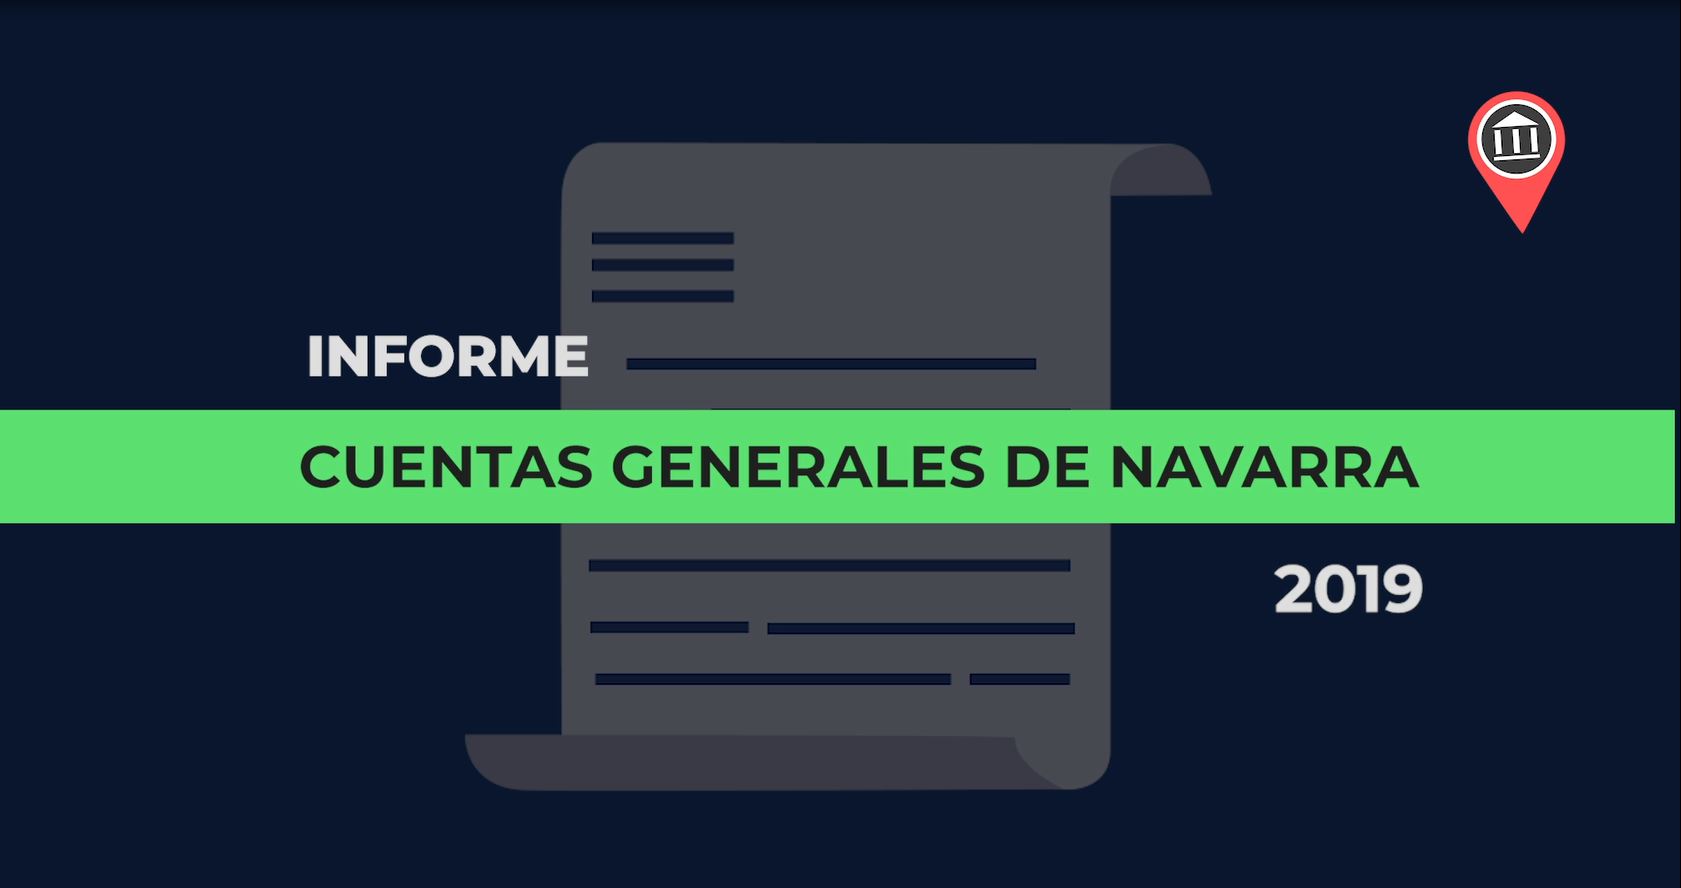 Cuentas generales de Navarra, 2019